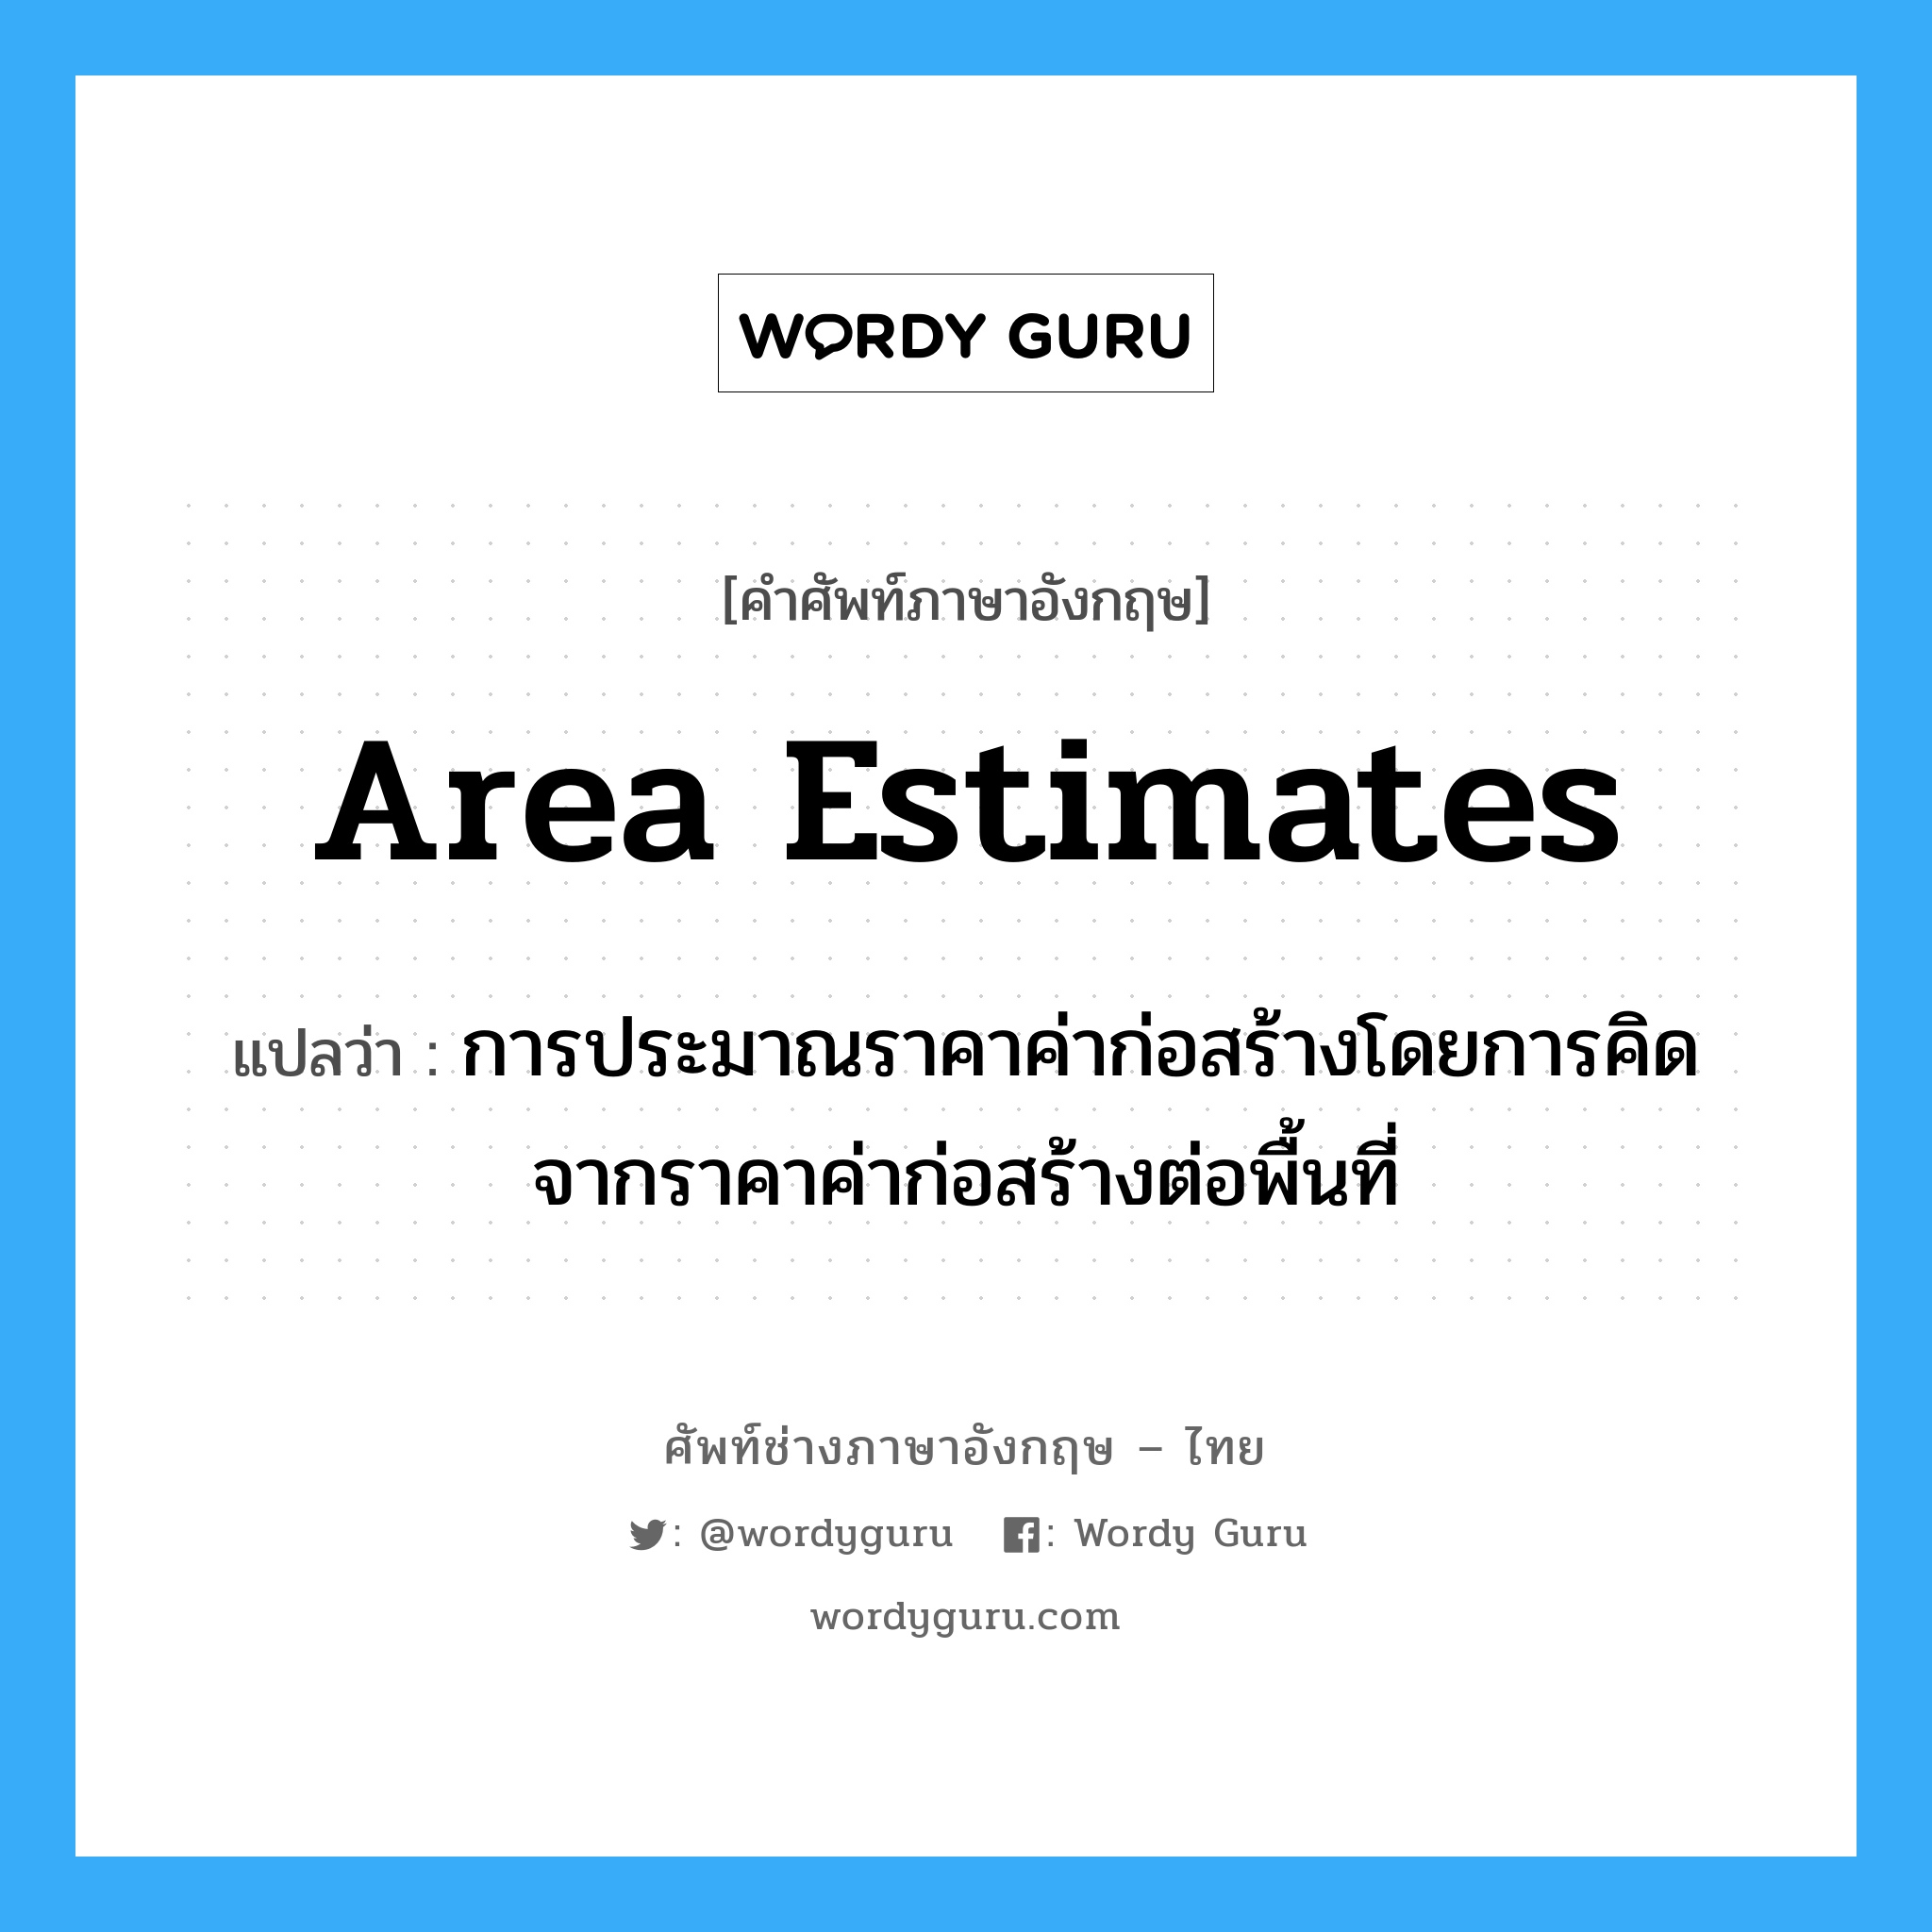 Area Estimates แปลว่า?, คำศัพท์ช่างภาษาอังกฤษ - ไทย Area Estimates คำศัพท์ภาษาอังกฤษ Area Estimates แปลว่า การประมาณราคาค่าก่อสร้างโดยการคิดจากราคาค่าก่อสร้างต่อพื้นที่